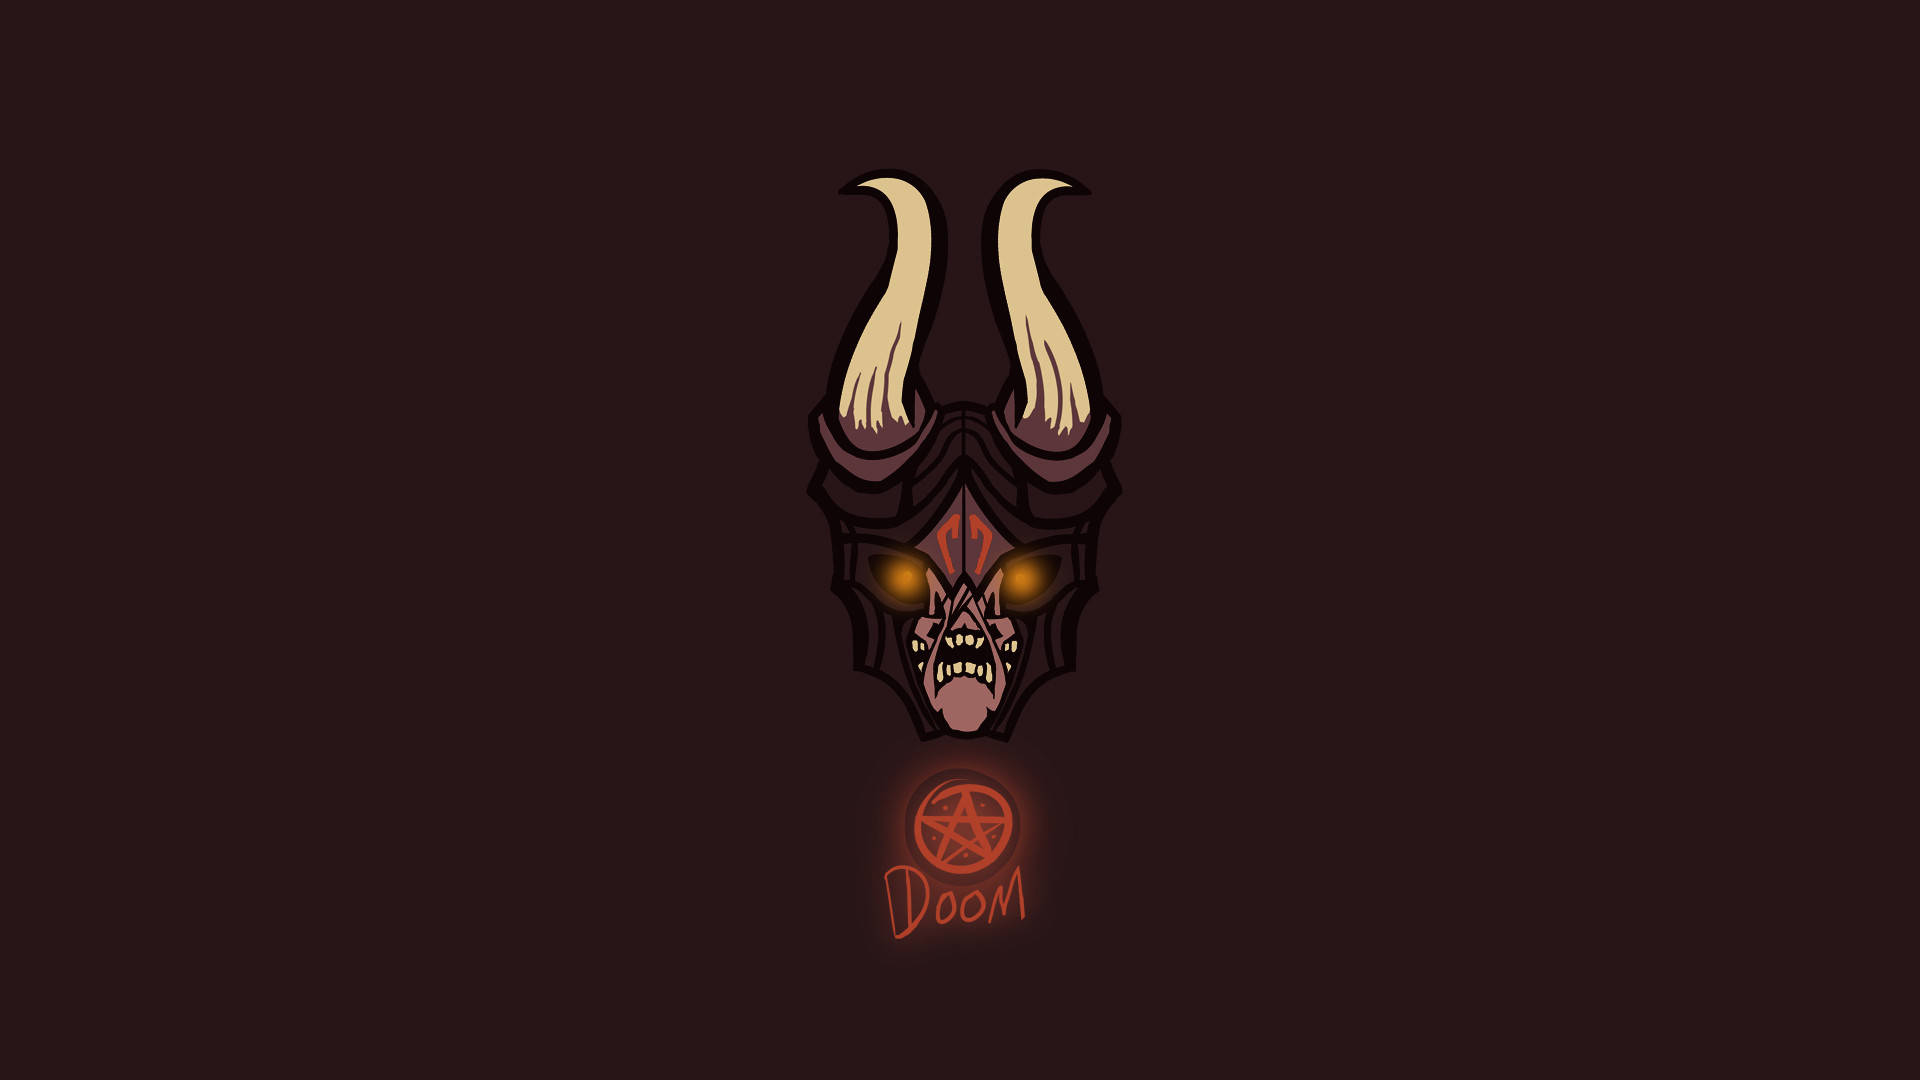 Doom Hd Demon Emperor Background